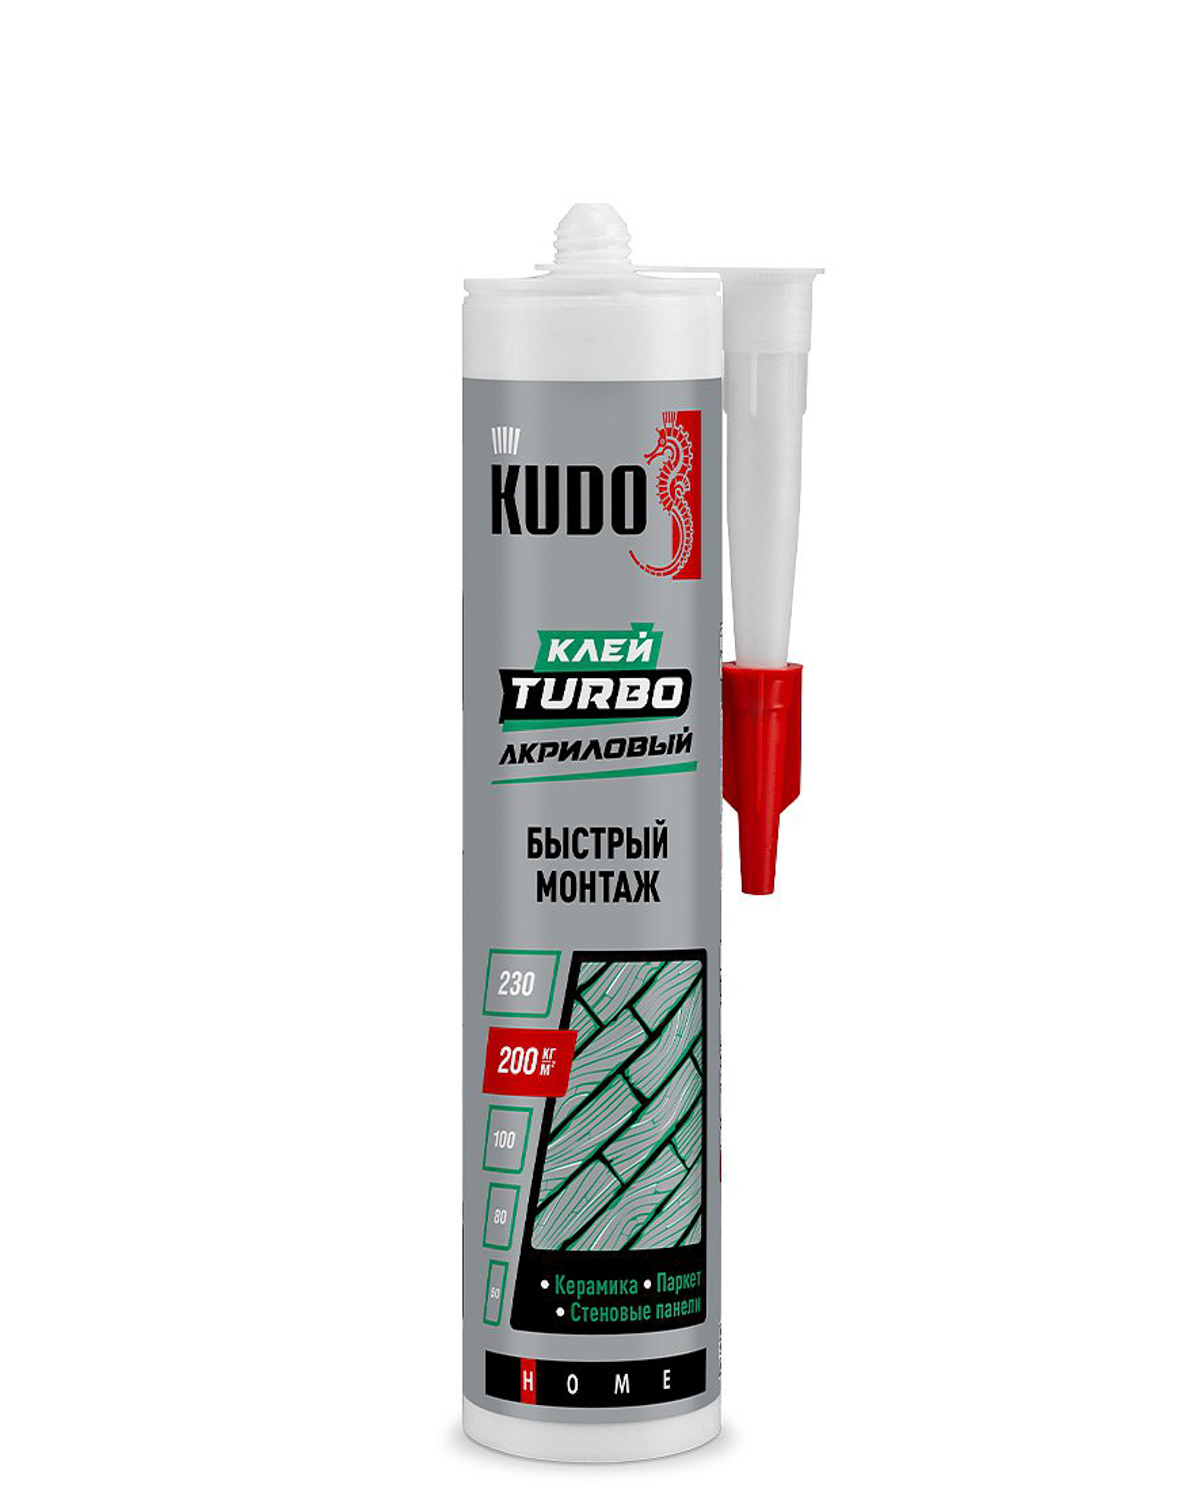 Клей Kudo Turbo для быстрого монтажа универсальный белый KBK-331 280 мл универсальный цианоакрилатный клей kudo